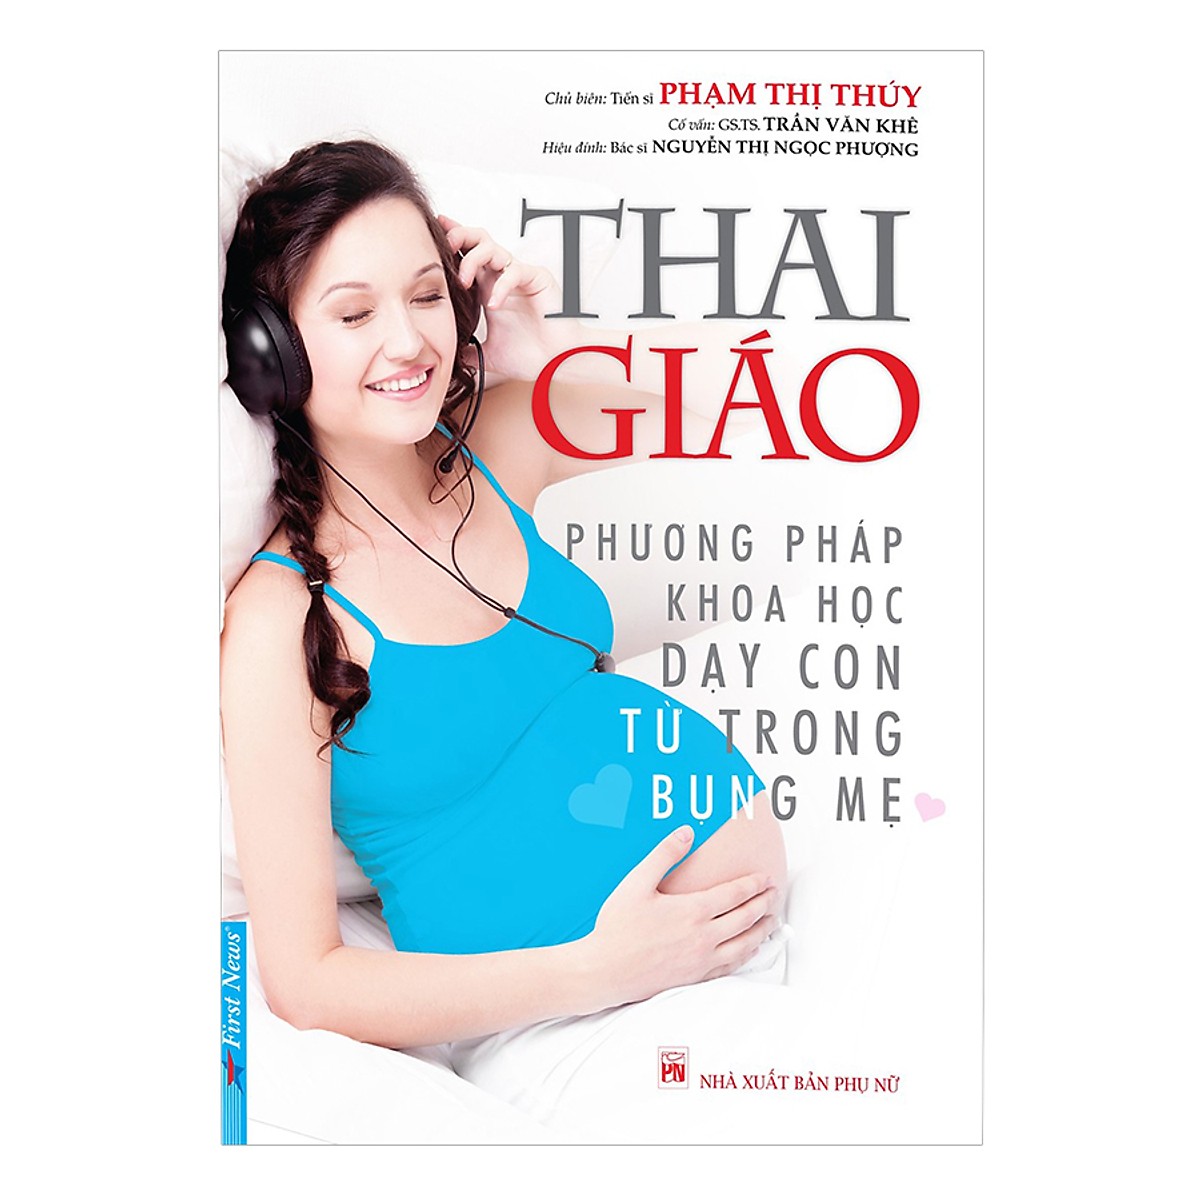 Thai giáo – Phương pháp khoa học dạy con trong bụng mẹ